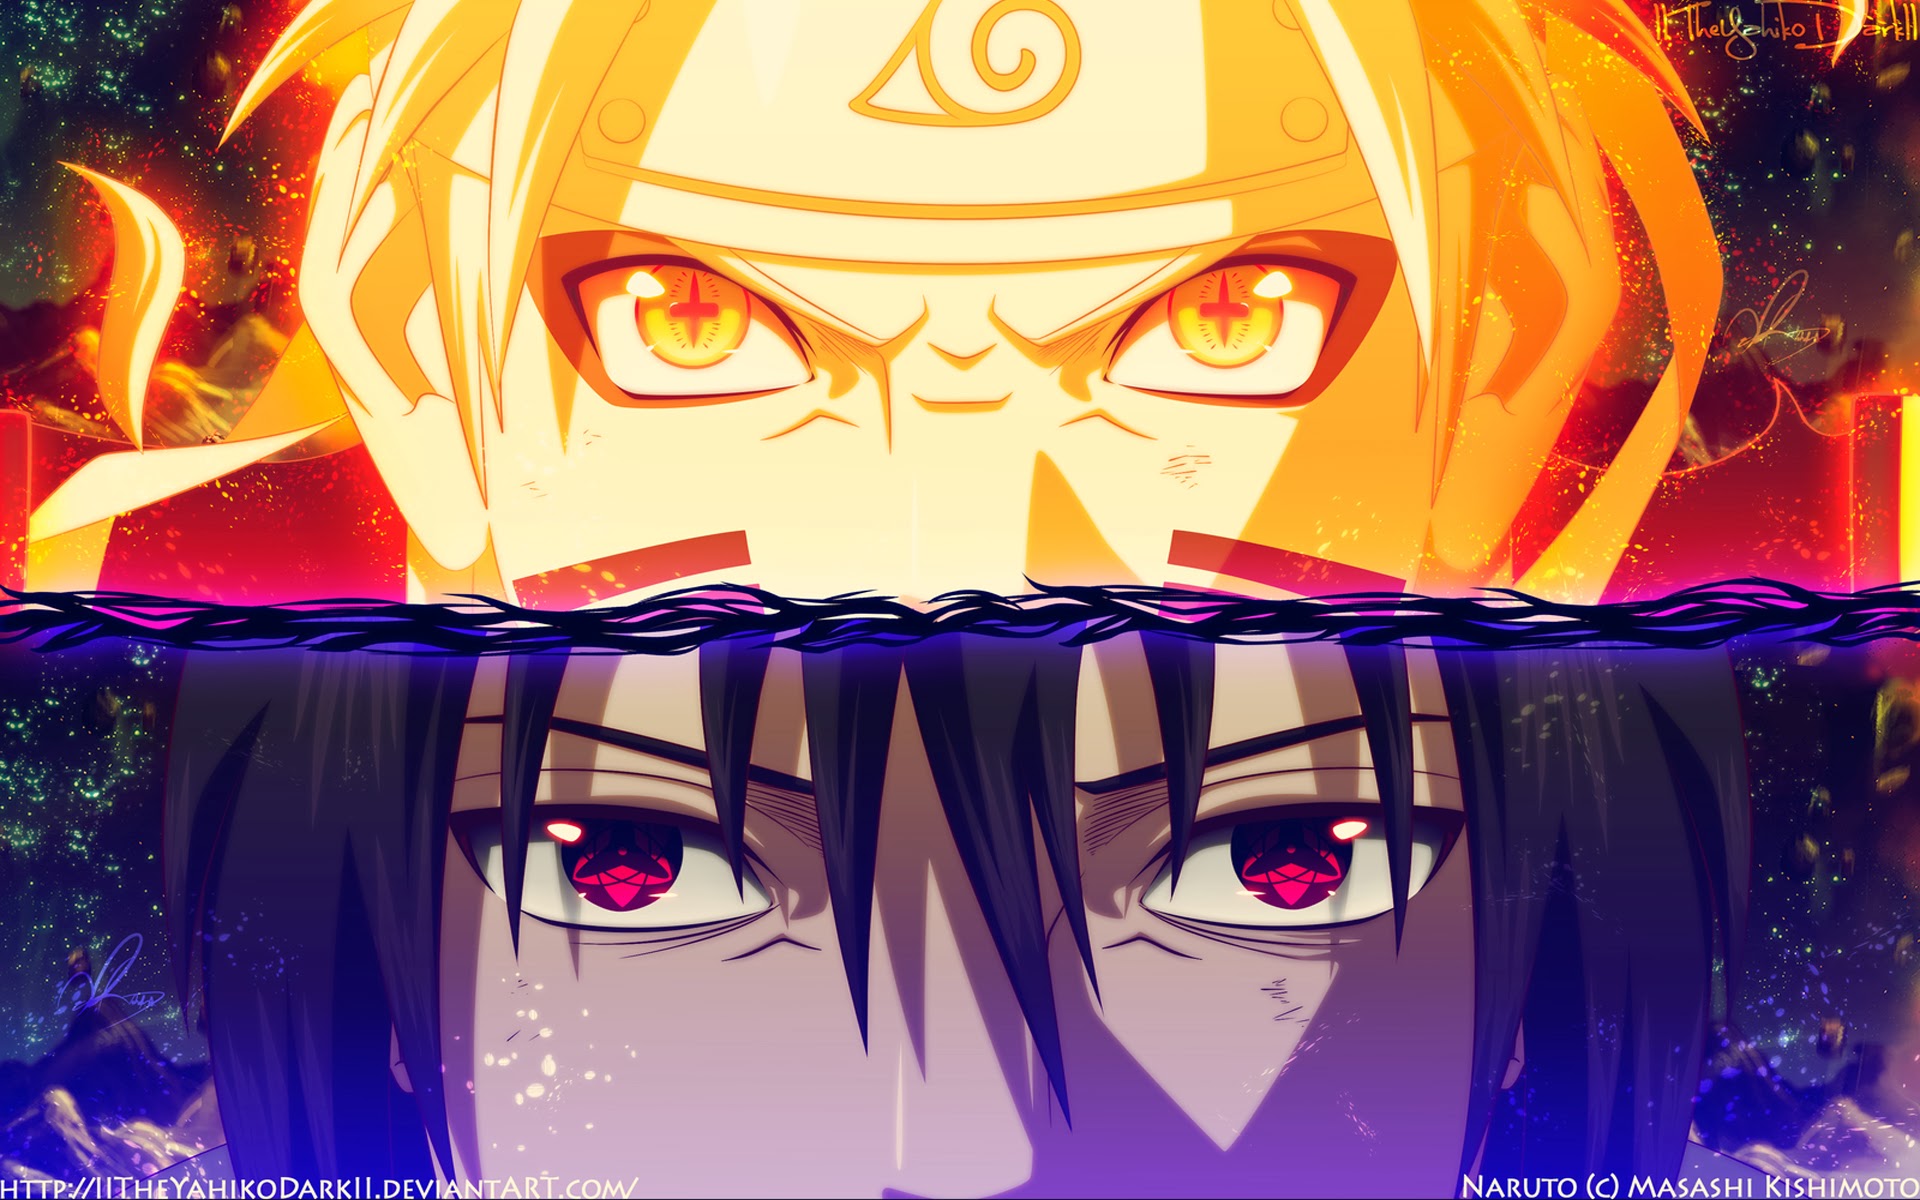 A16 Naruto Uzumaki anime Sasuke Uchiha HD Desktop background wallpapers downloads